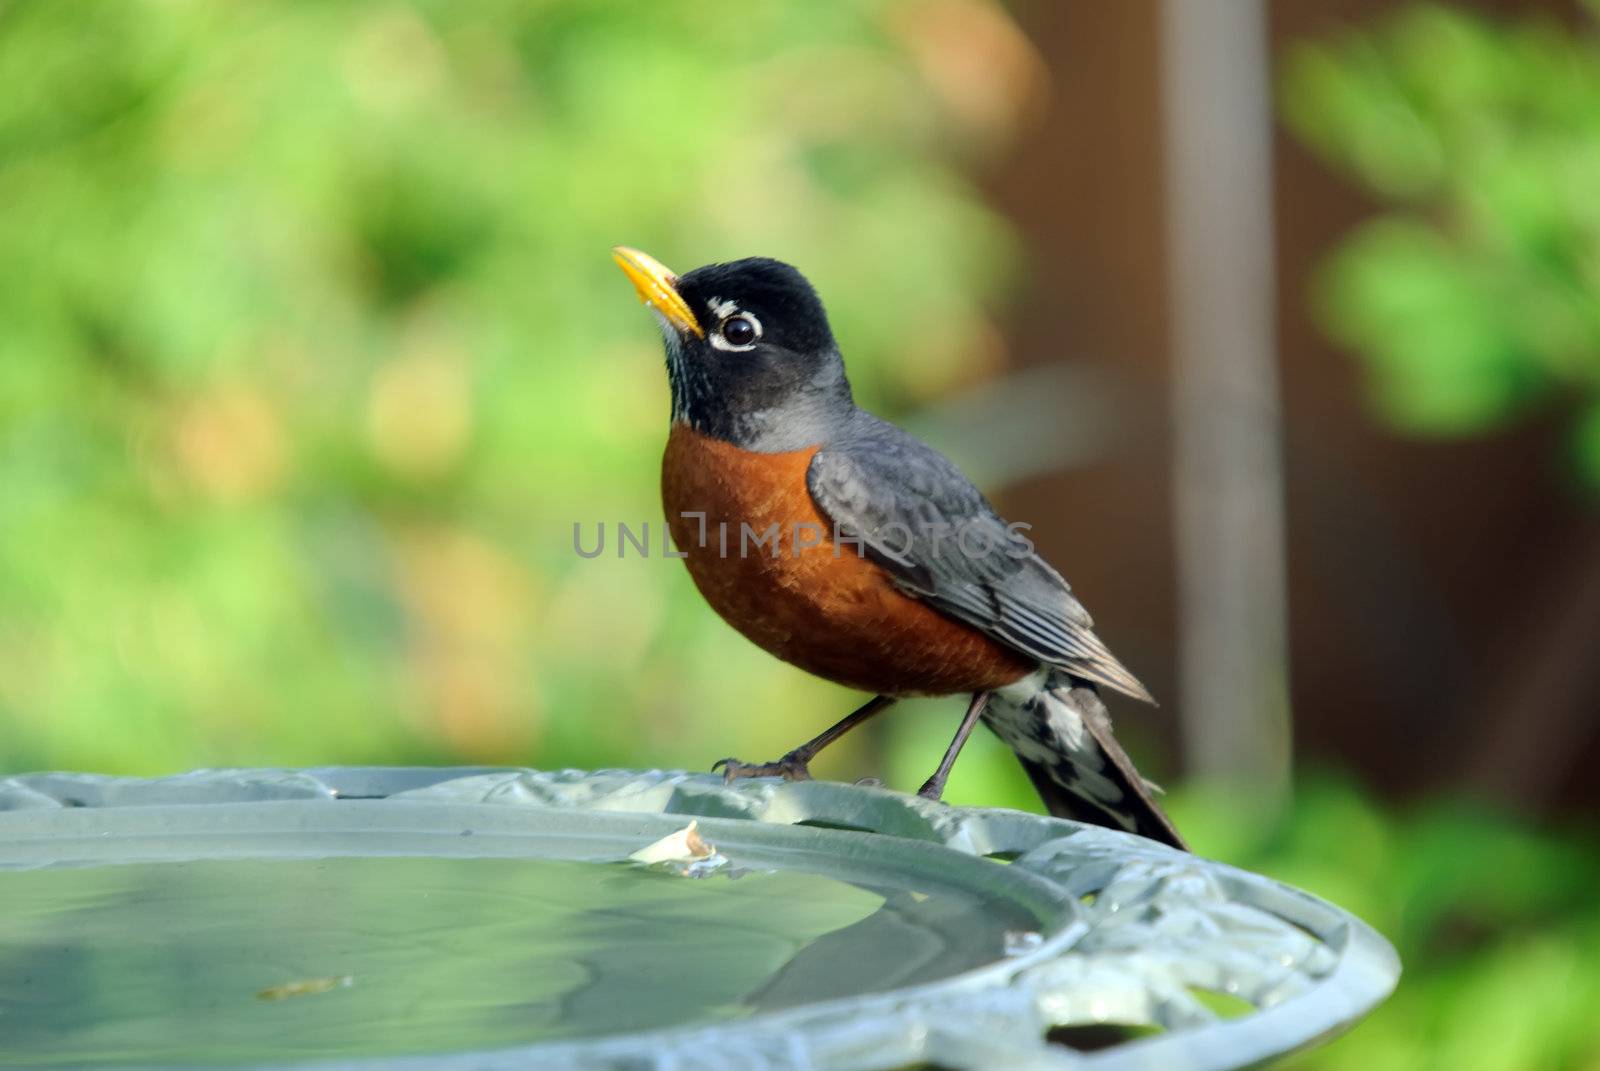 American Robin on the side of a bird bath